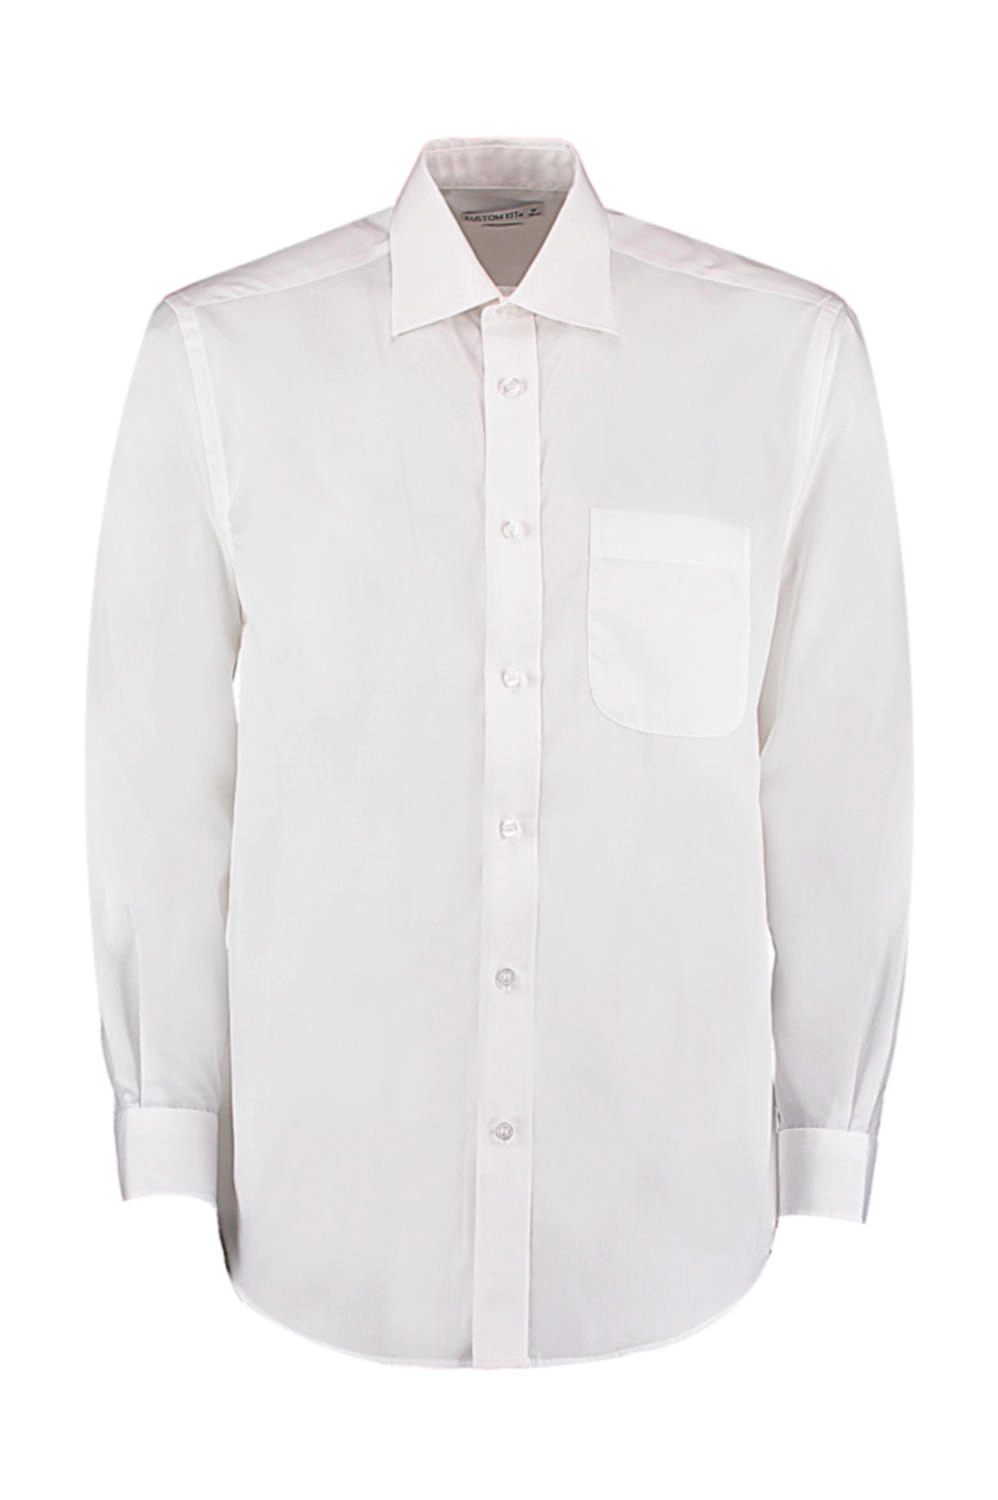 Classic Fit Business Shirt zum Besticken und Bedrucken in der Farbe White mit Ihren Logo, Schriftzug oder Motiv.